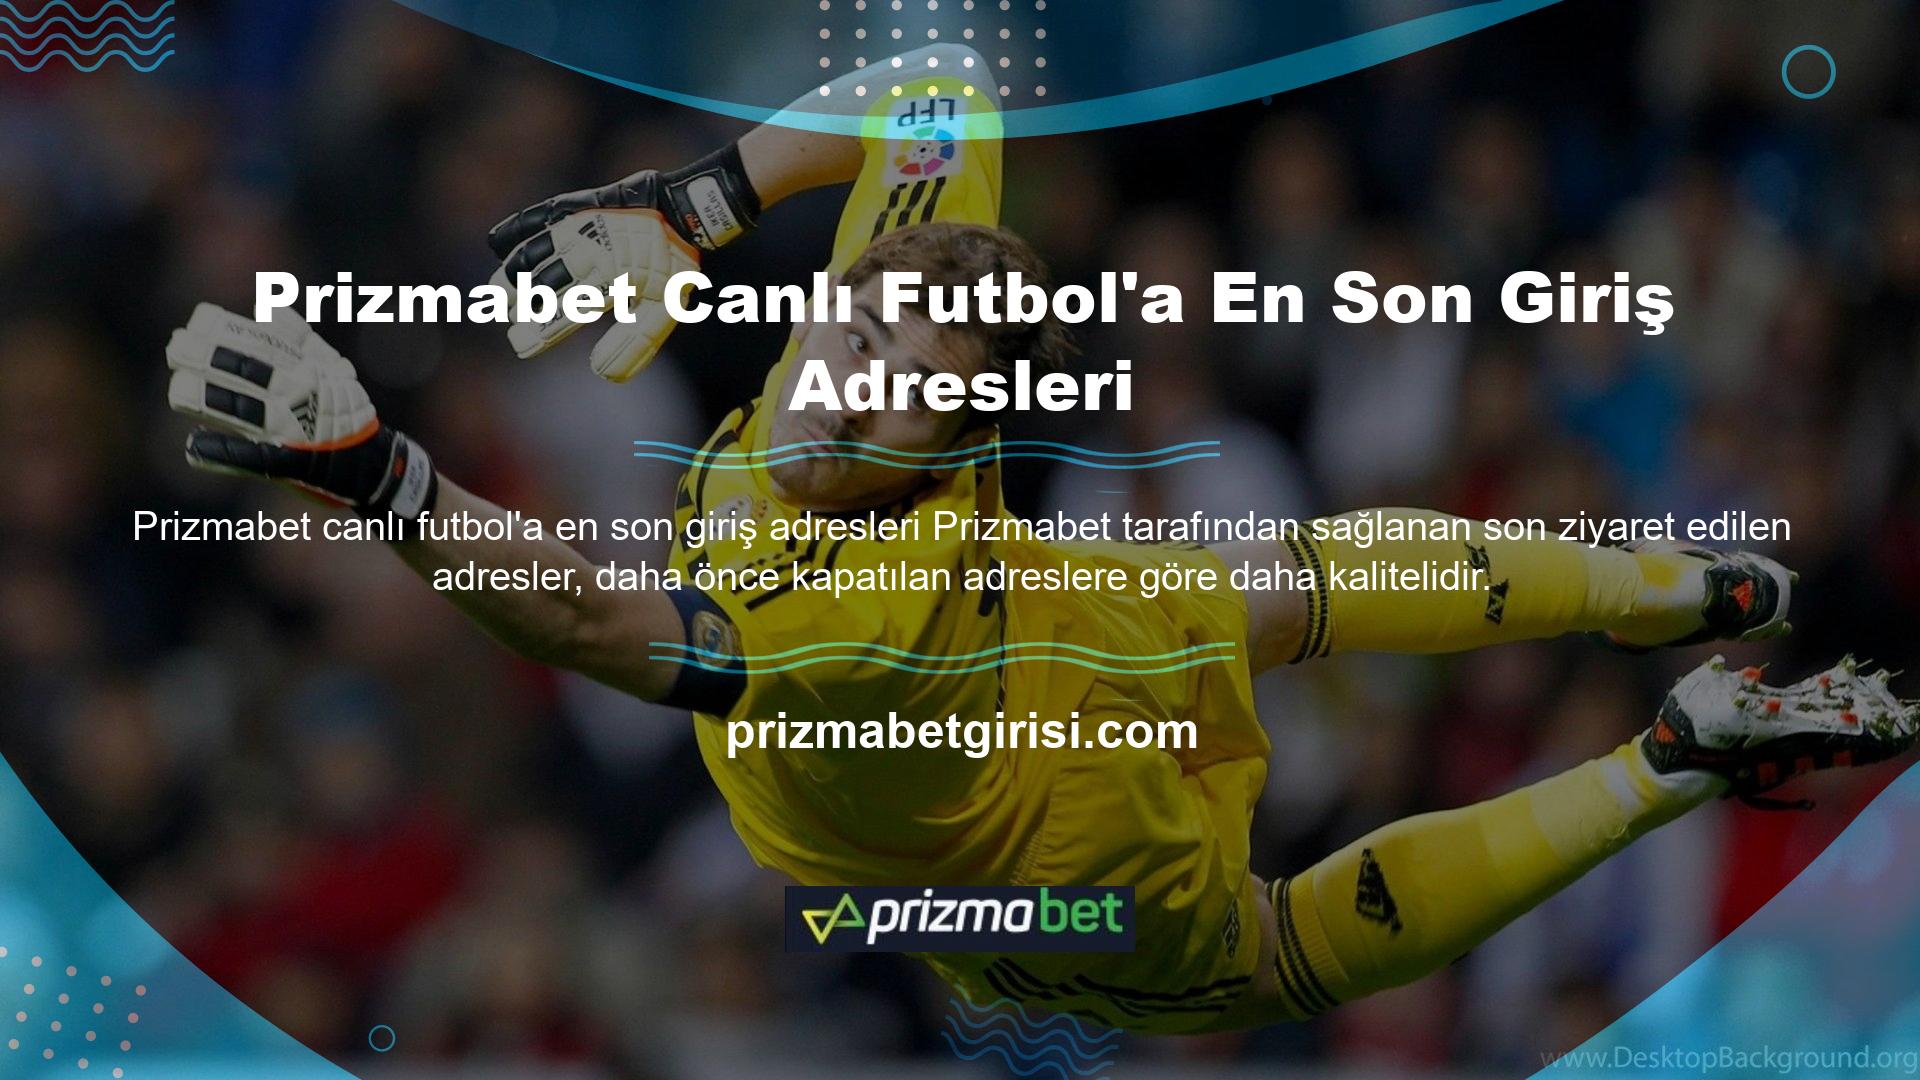 Prizmabet en son girişi, güçlü bir altyapı programıyla desteklenen canlı futboldur